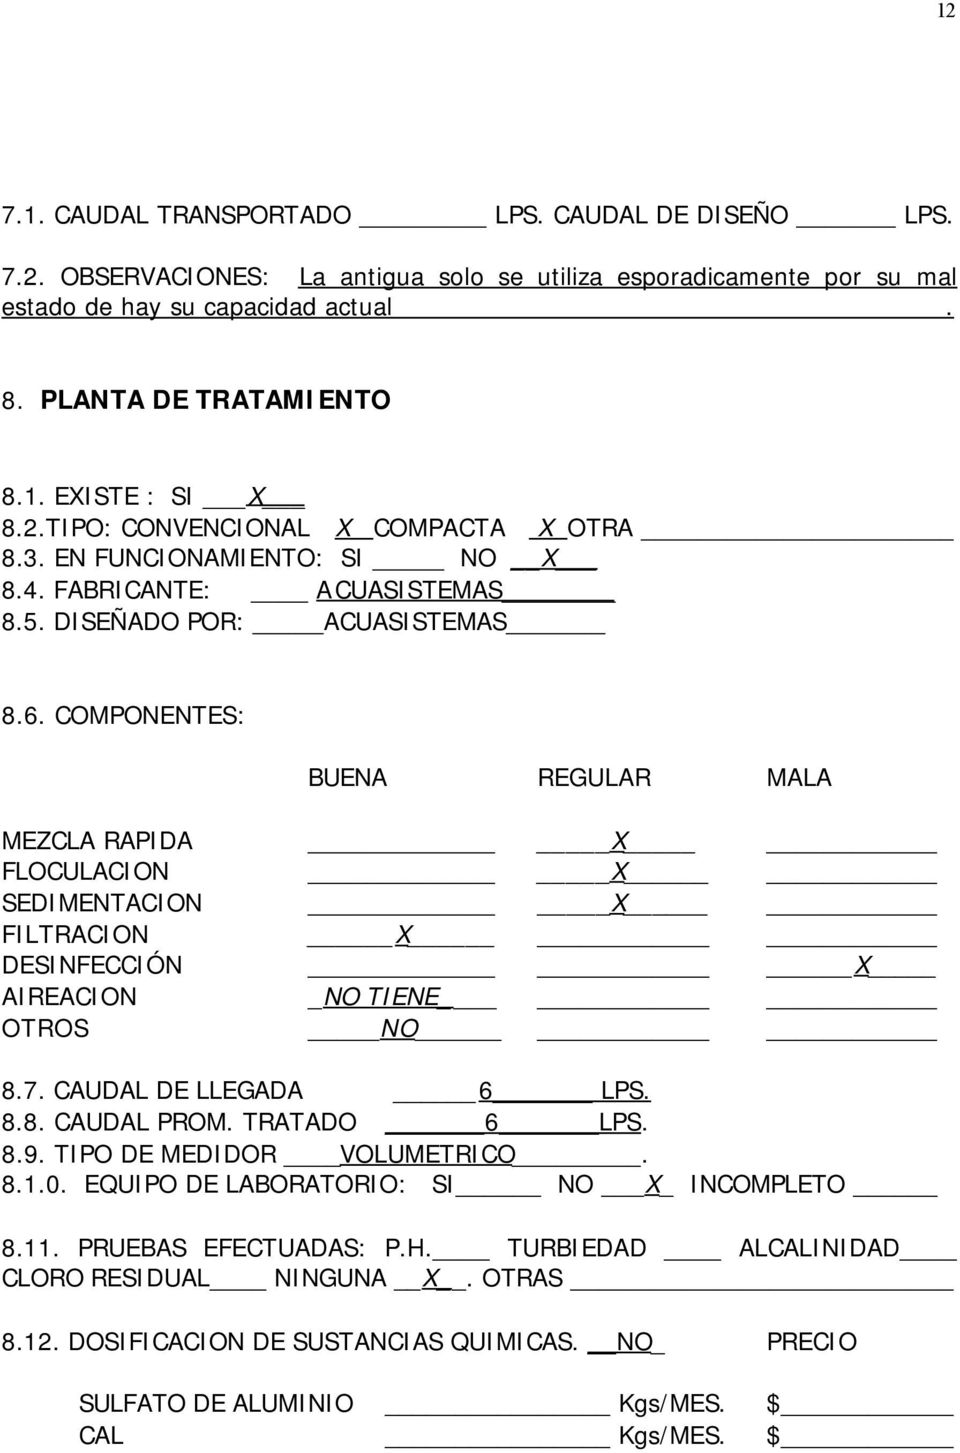 COMPONENTES: BUENA REGULAR MALA MEZCLA RAPIDA X FLOCULACION X SEDIMENTACION X FILTRACION X DESINFECCIÓN X AIREACION _NO TIENE OTROS NO 8.7. CAUDAL DE LLEGADA 6 LPS. 8.8. CAUDAL PROM. TRATADO 6 LPS. 8.9.